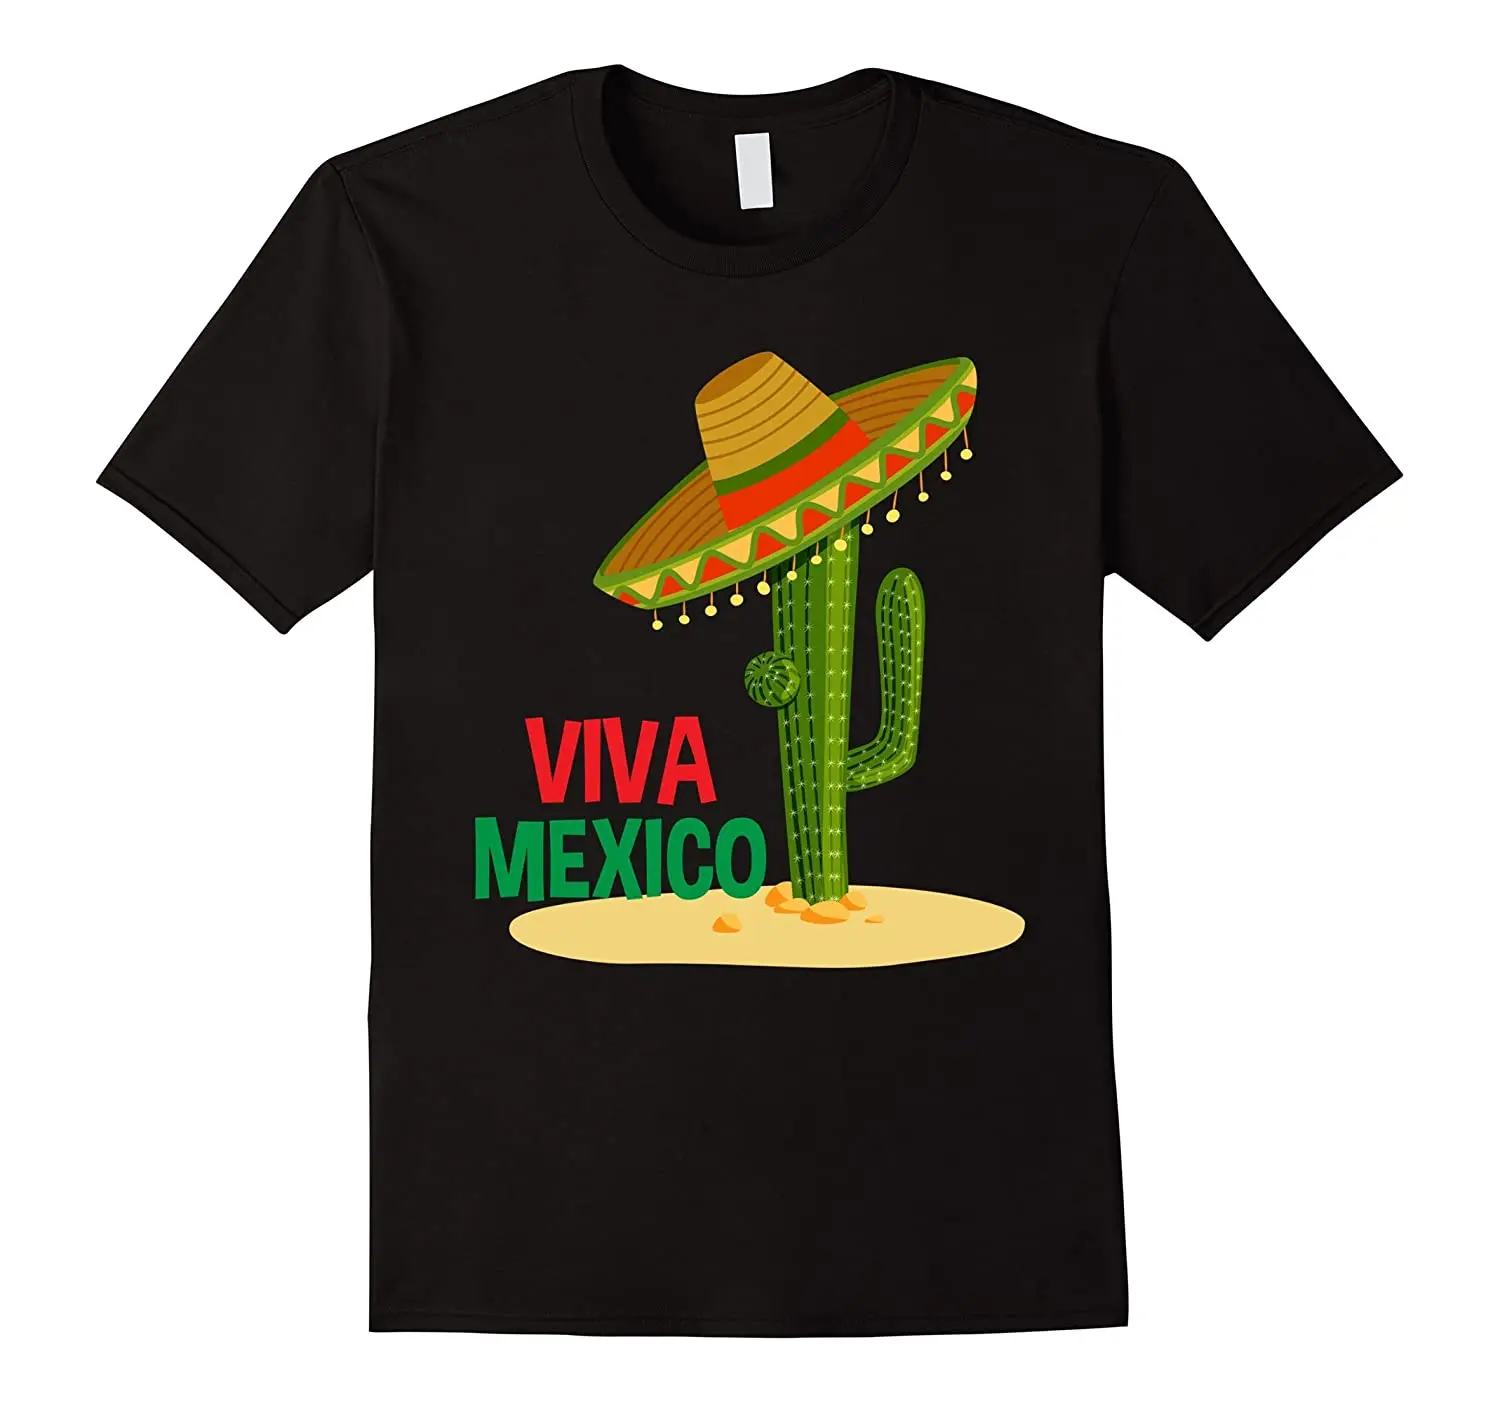 Футболка с флагом Мексики Viva. Летняя Хлопковая мужская футболка с коротким рукавом и круглым вырезом, Новинка